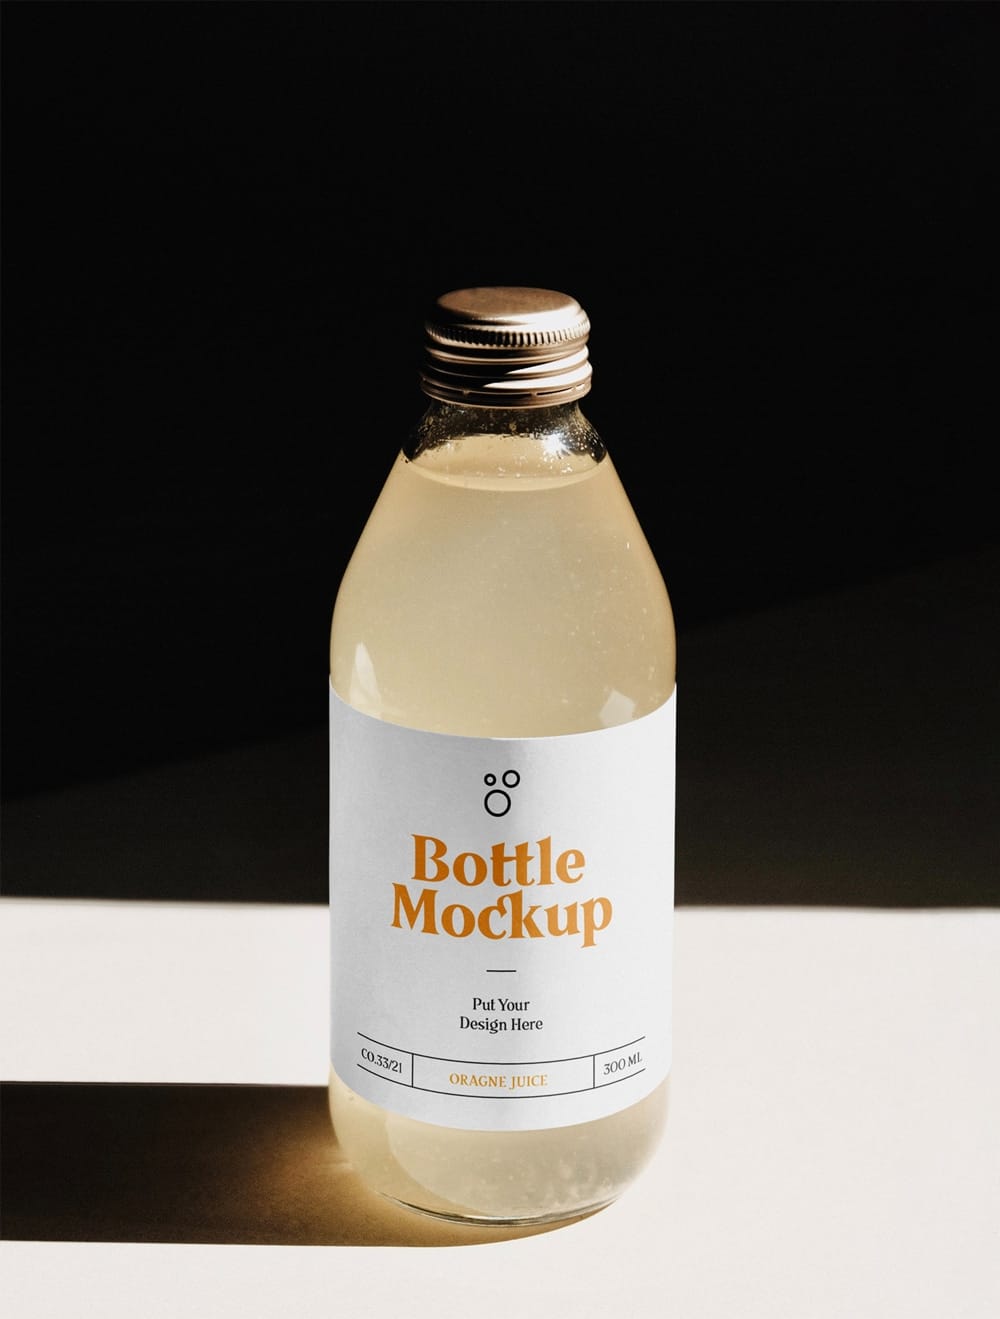 Glass Bottle PSD Mockup